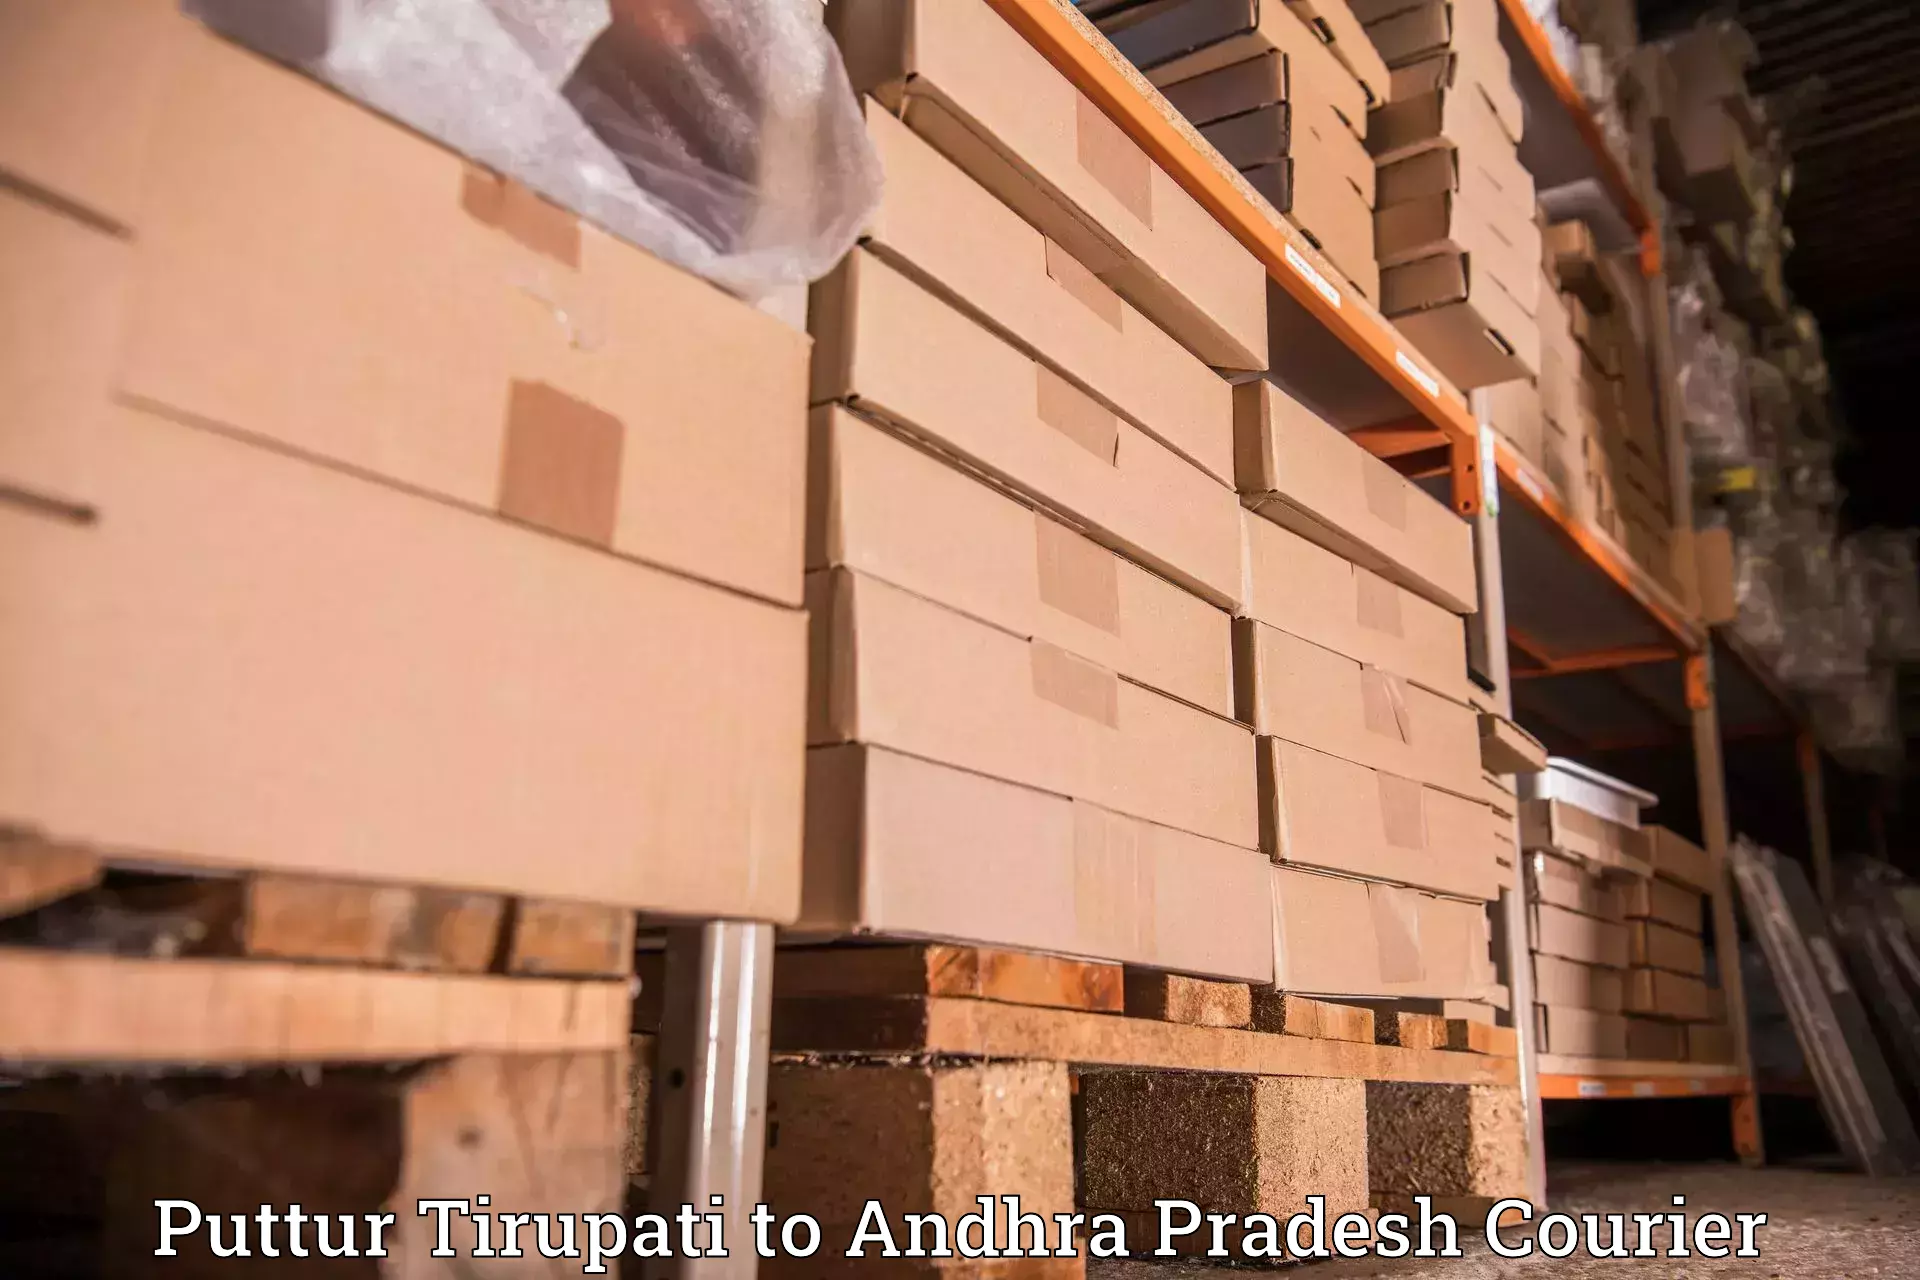 User-friendly delivery service in Puttur Tirupati to Venkatagirikota